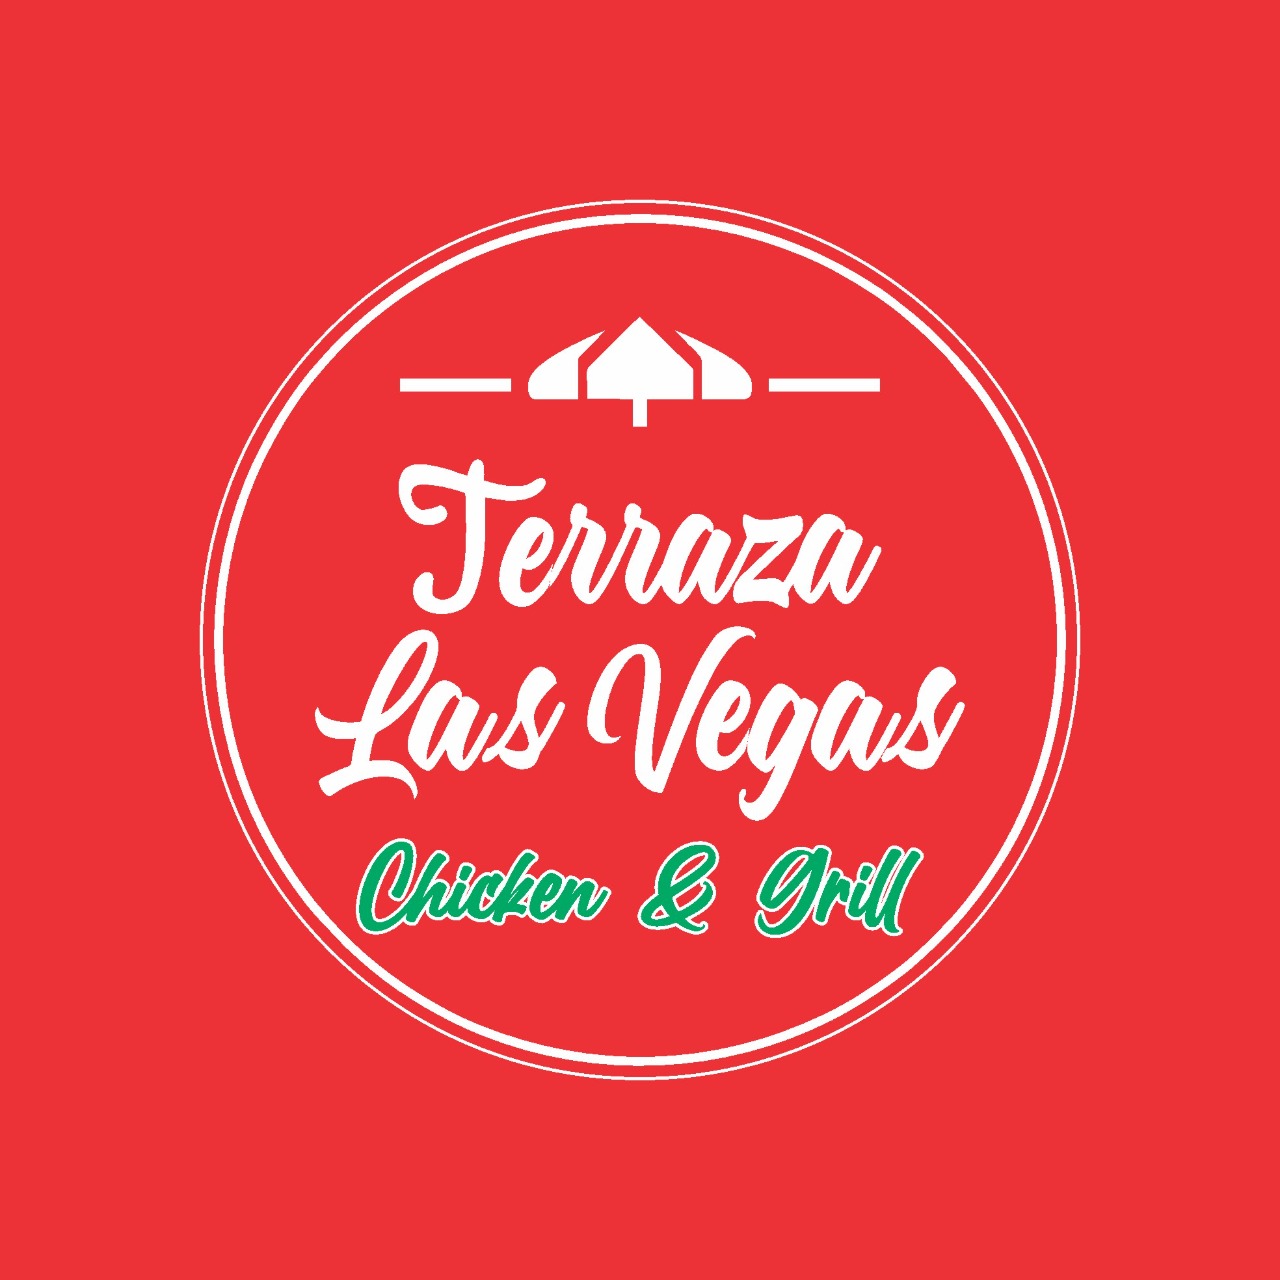 Terrazas Las Vegas - Chicken & Grill